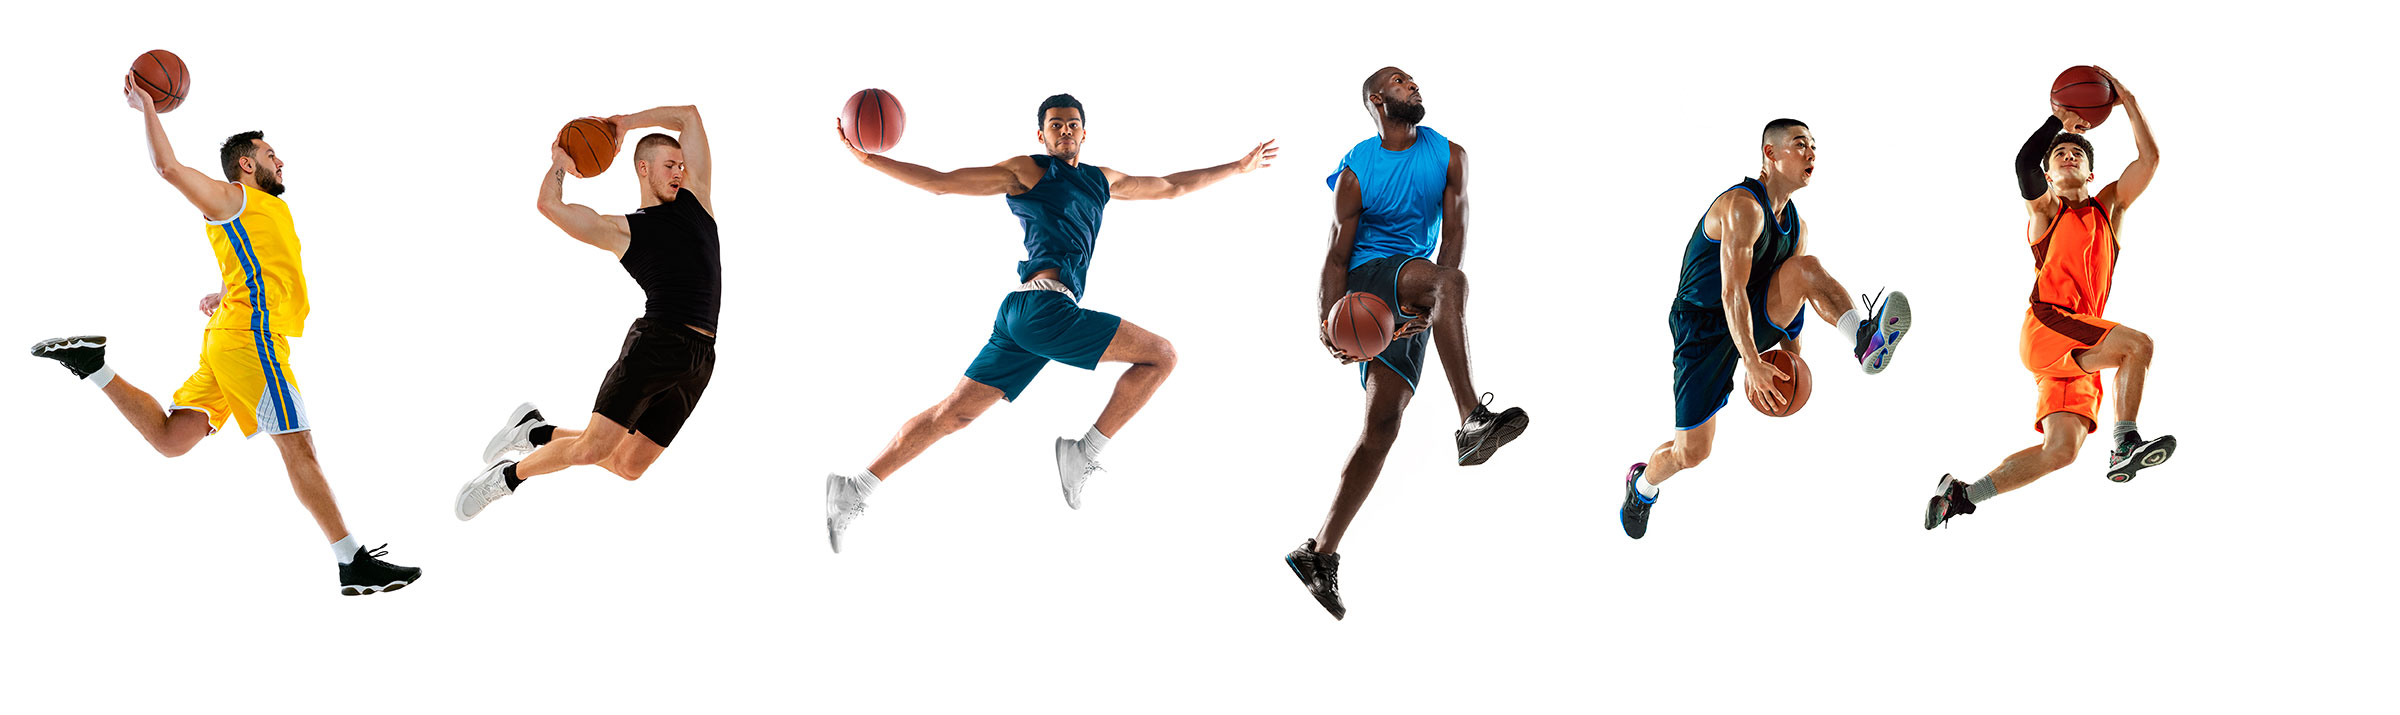 dieta del giocatore di basket migliora le prestazioni atletiche